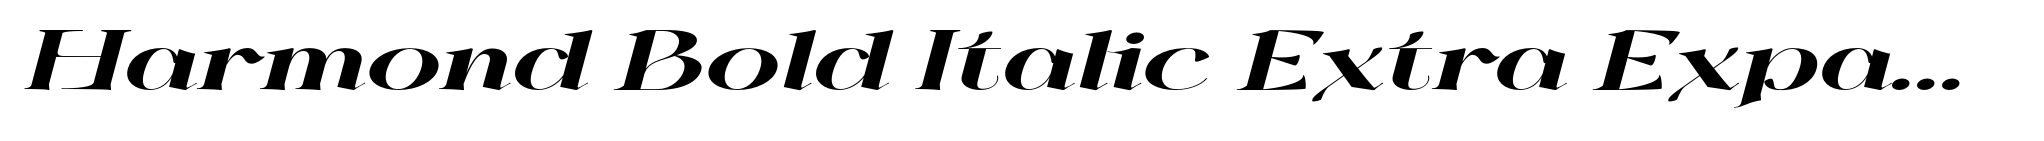 Harmond Bold Italic Extra Expanded image